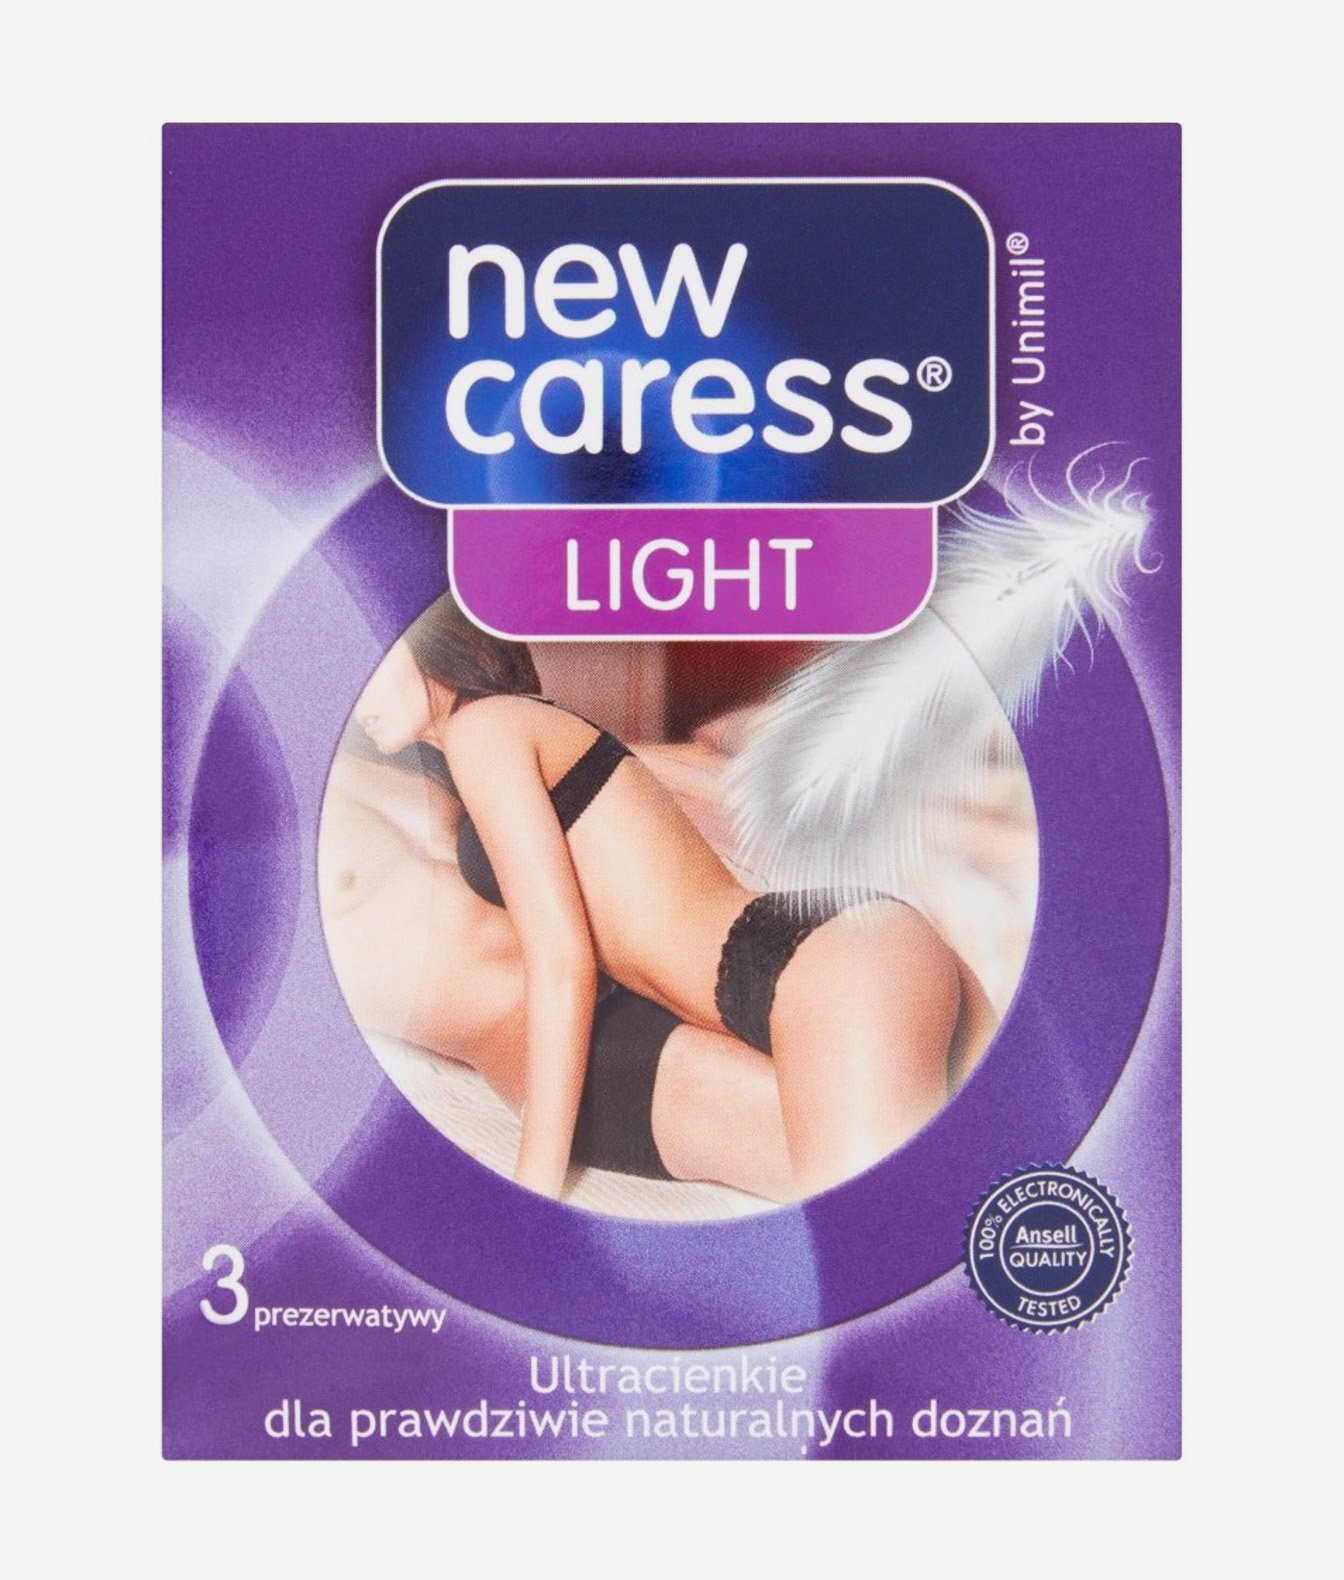 New Caress new caress box 3 light Prezerwatywy 3 szt